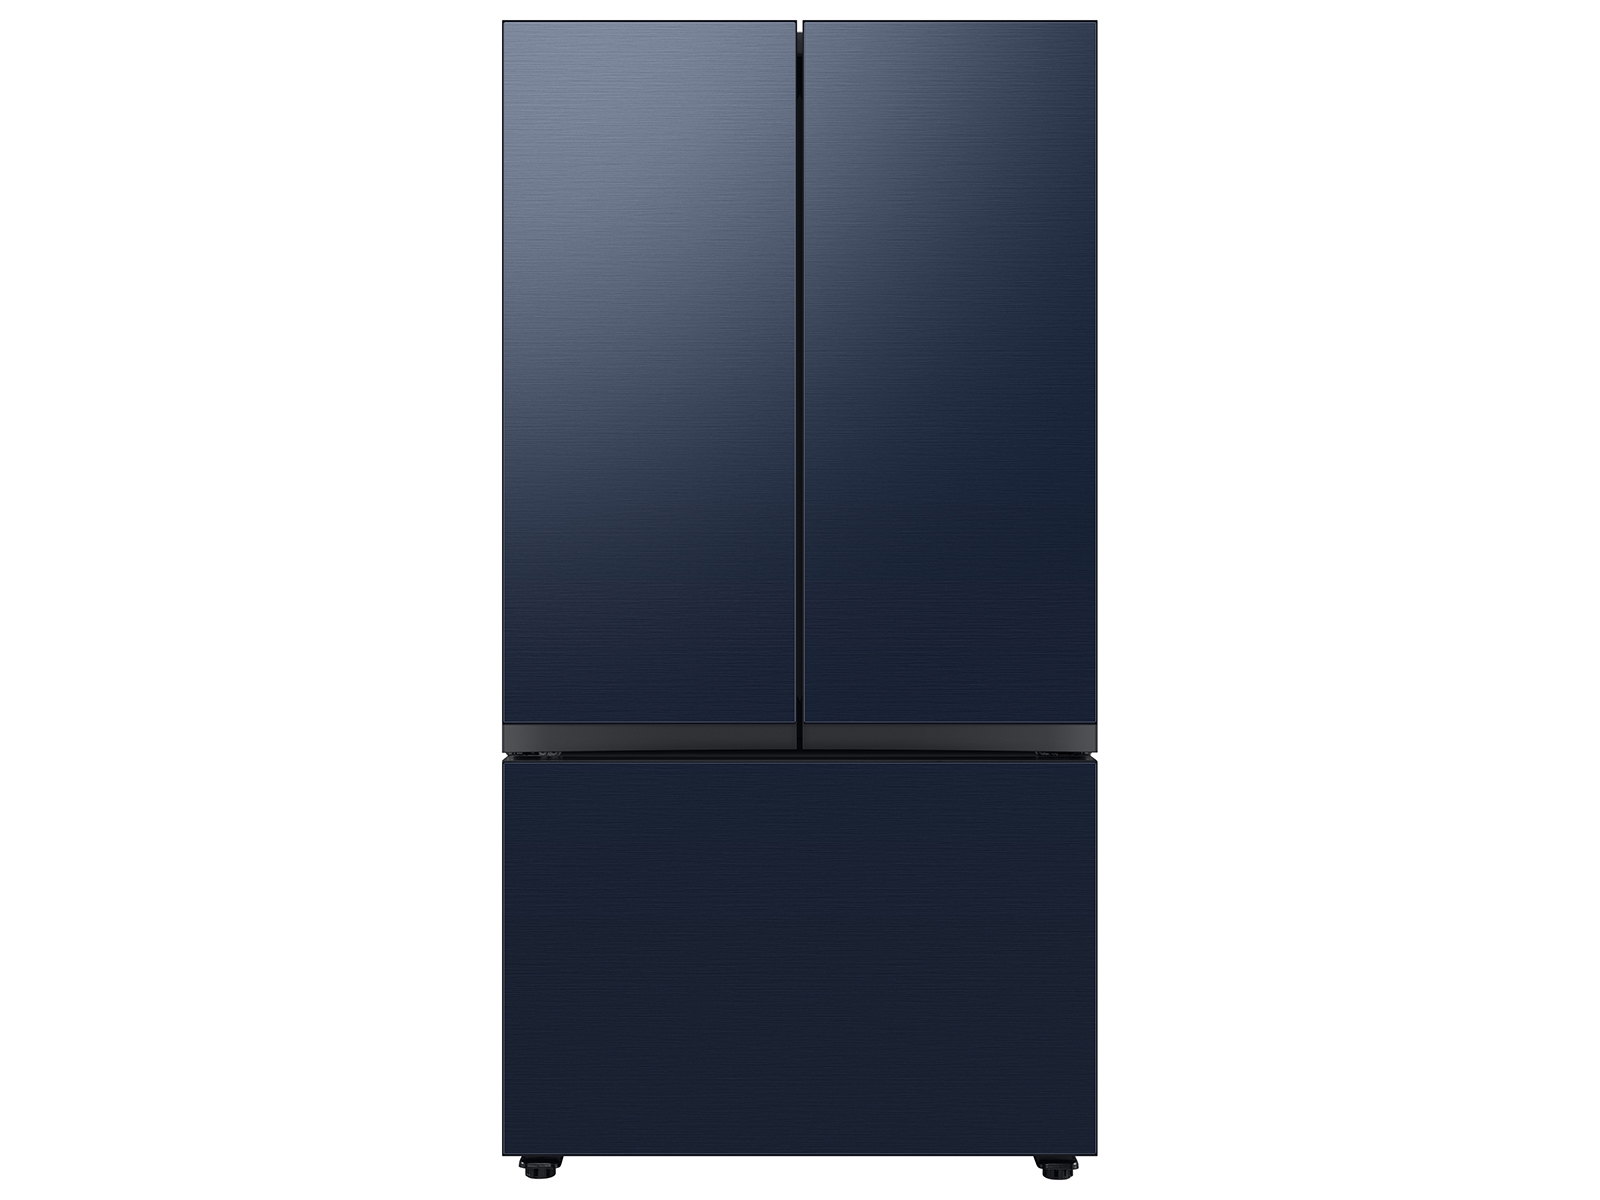 Bespoke 3-Door French Door Refrigerator (30 cu. ft.) with Beverage Center™ in Navy Steel